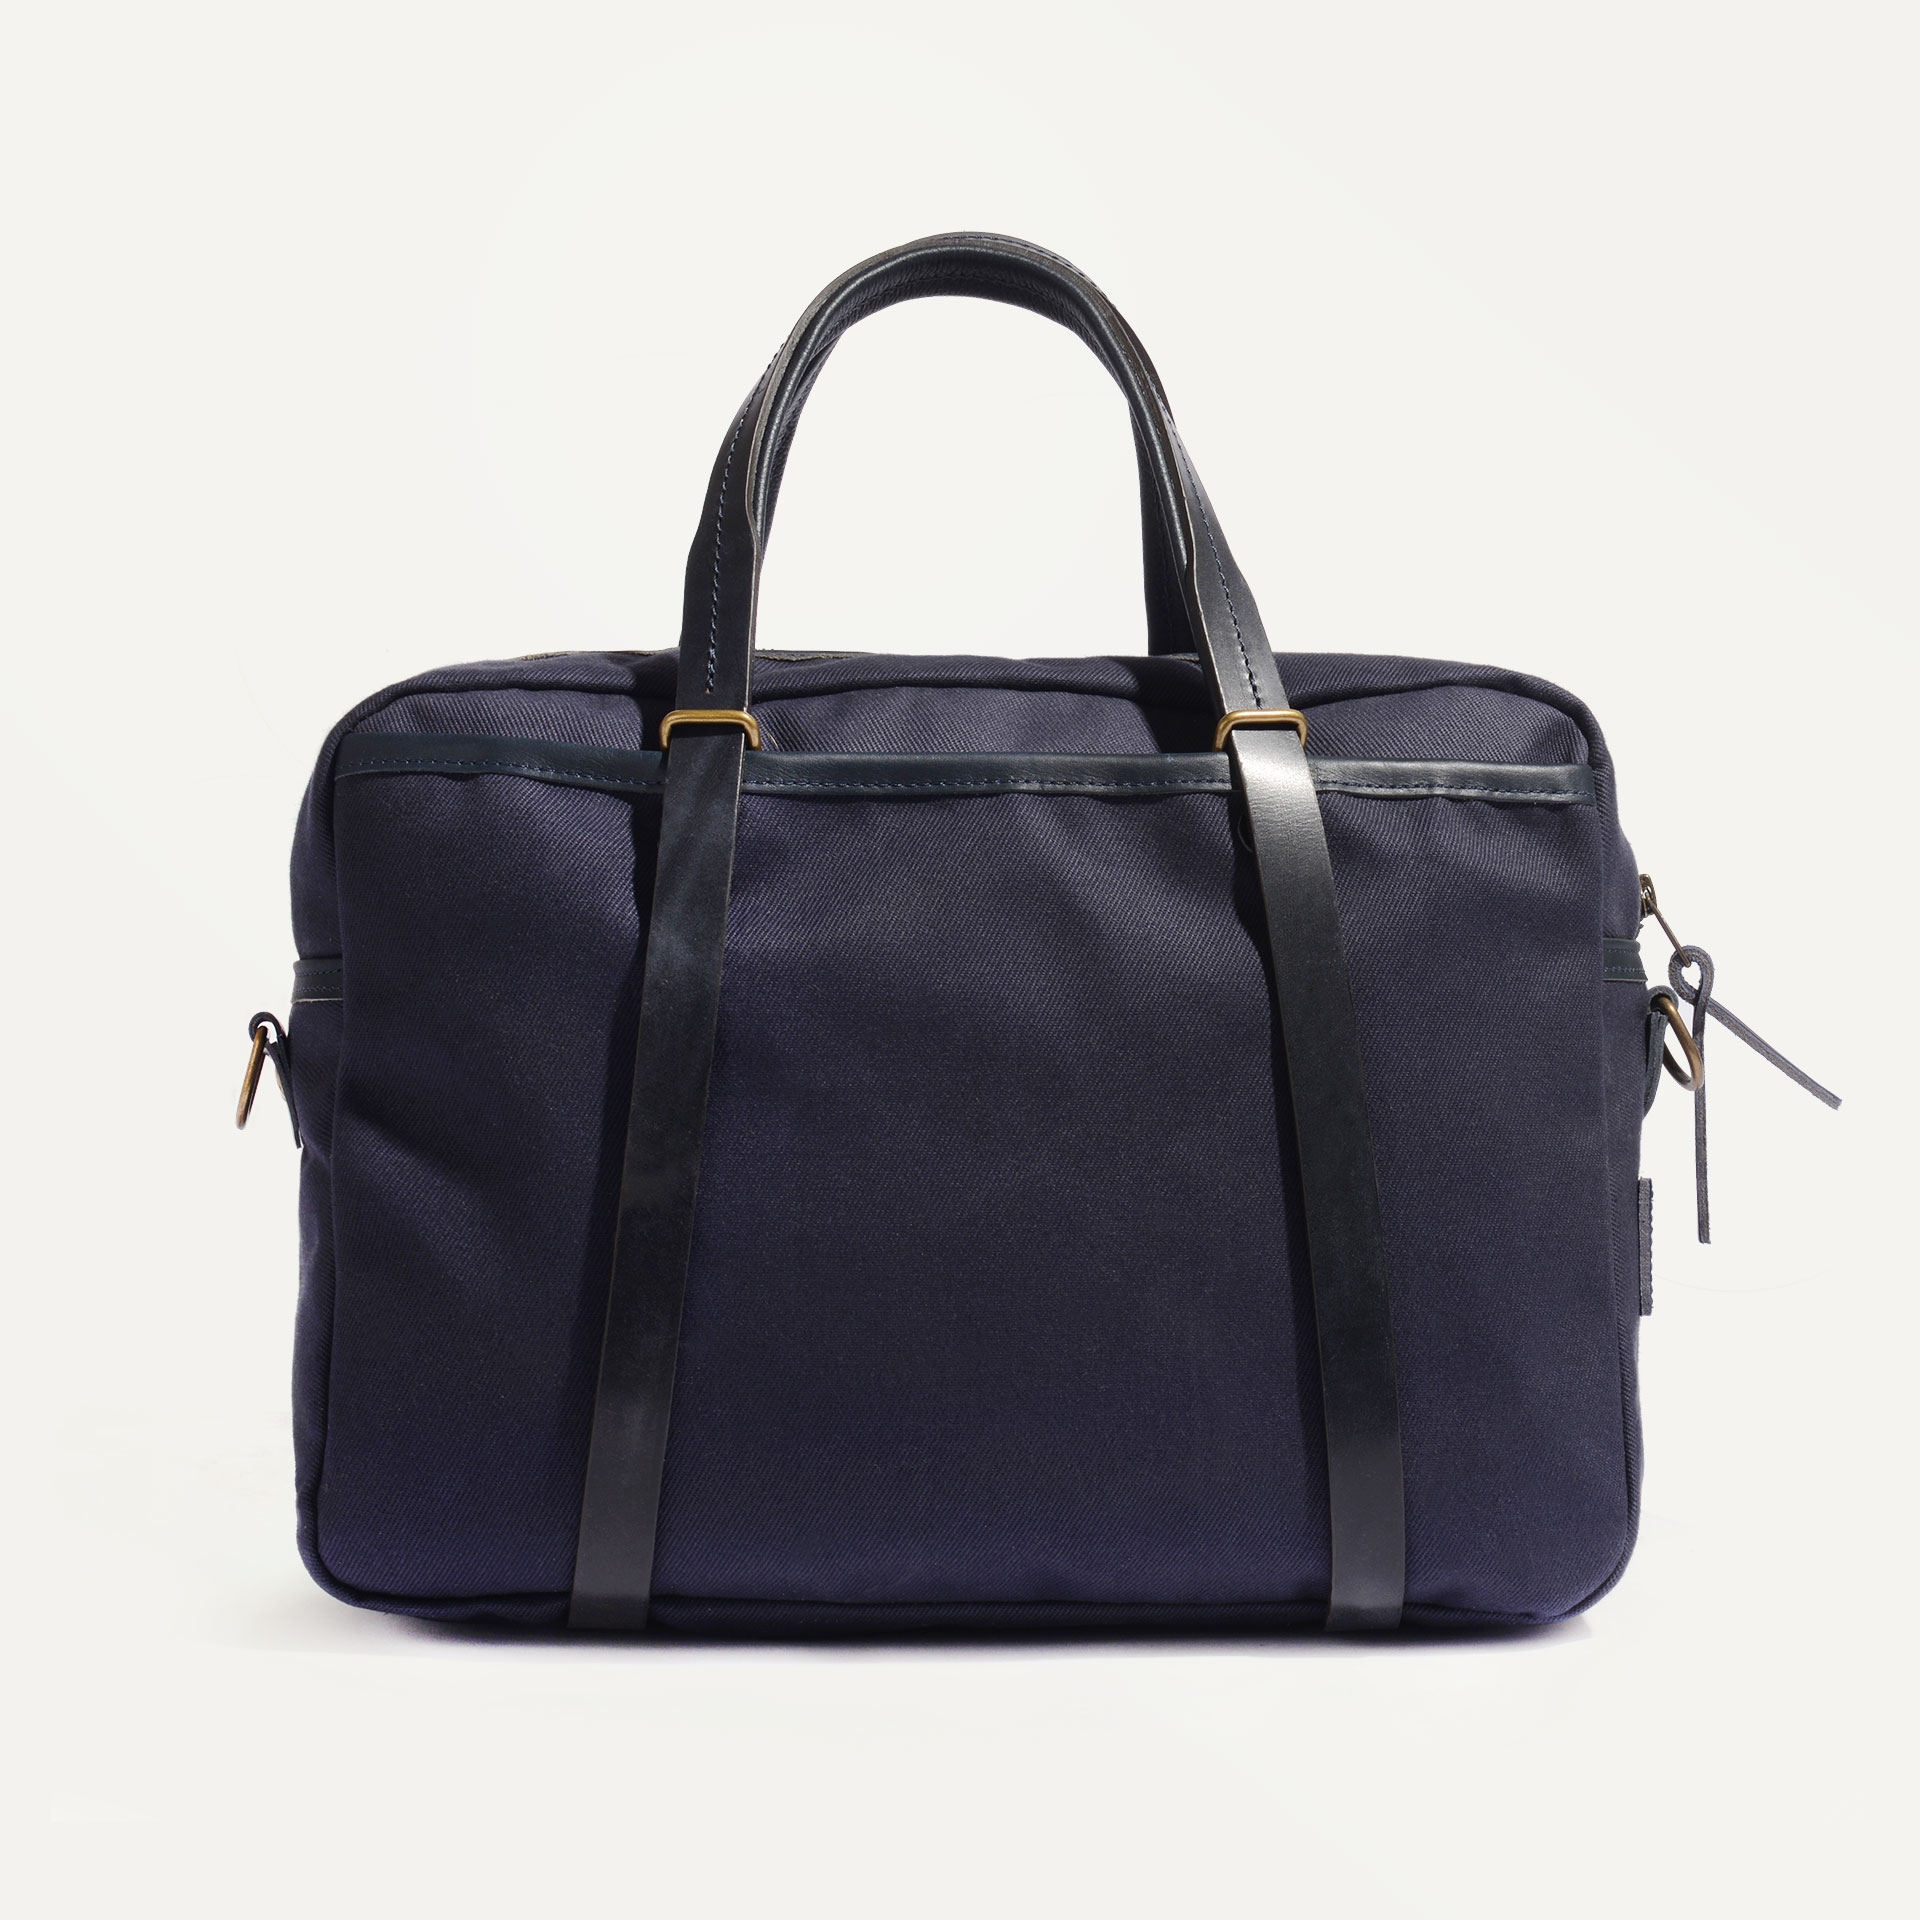 SUMO laptop bag - Bleu de Chauffe x Élysée / Navy Blue (image n°3)